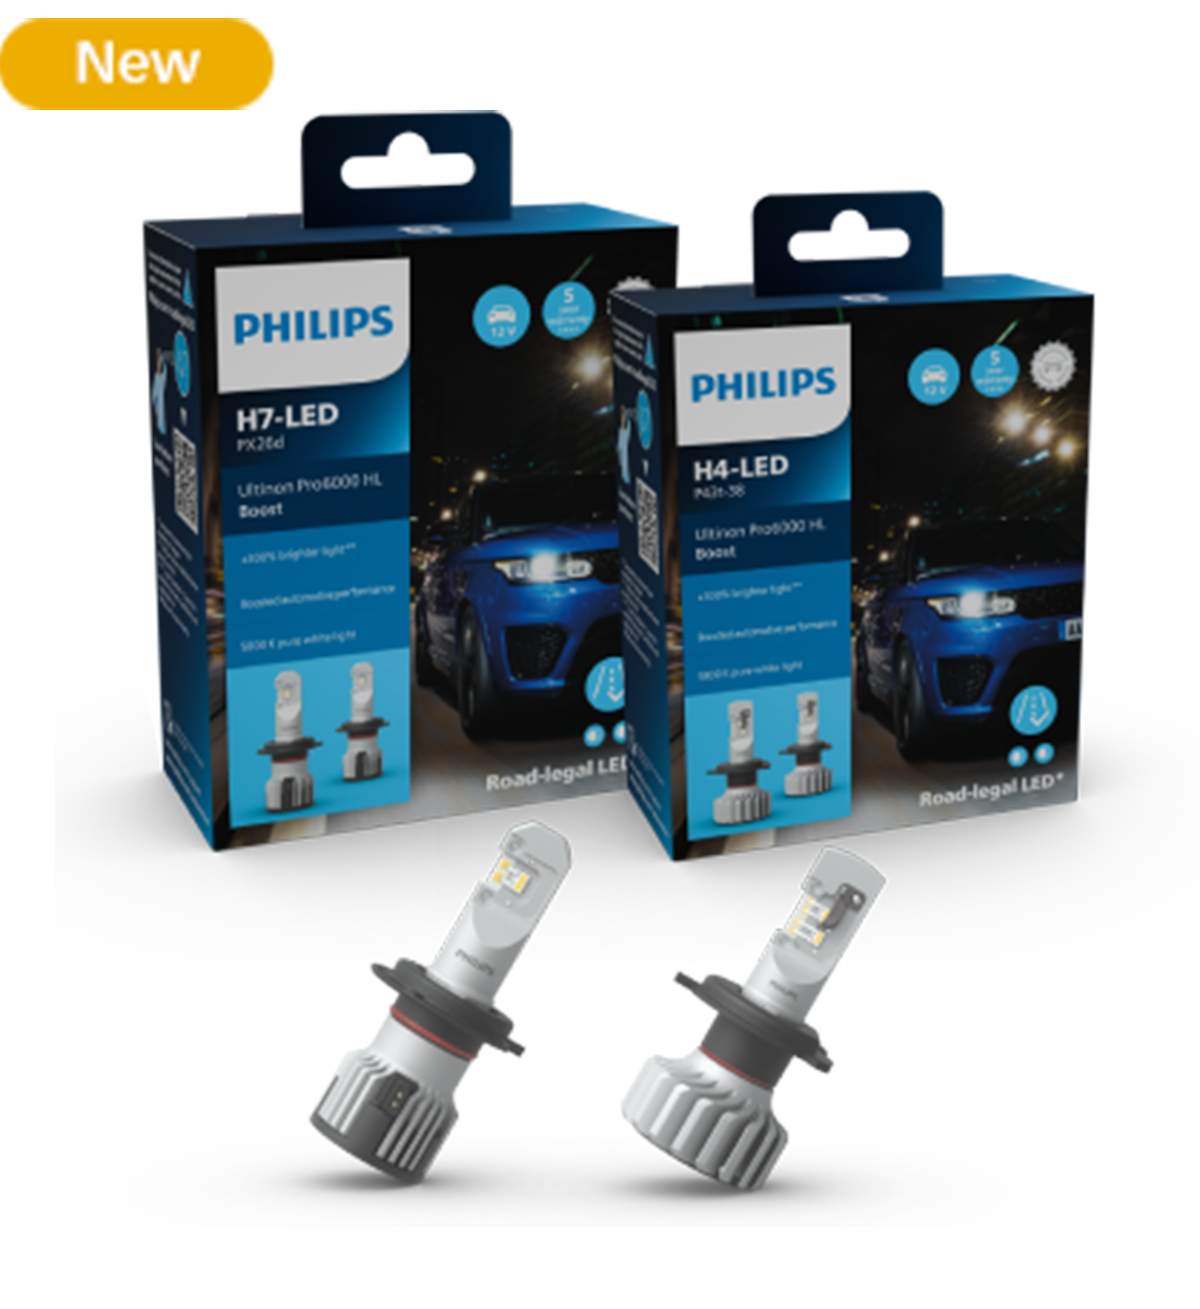 Philips A7607 waterproof open-ear wireless sports headphones